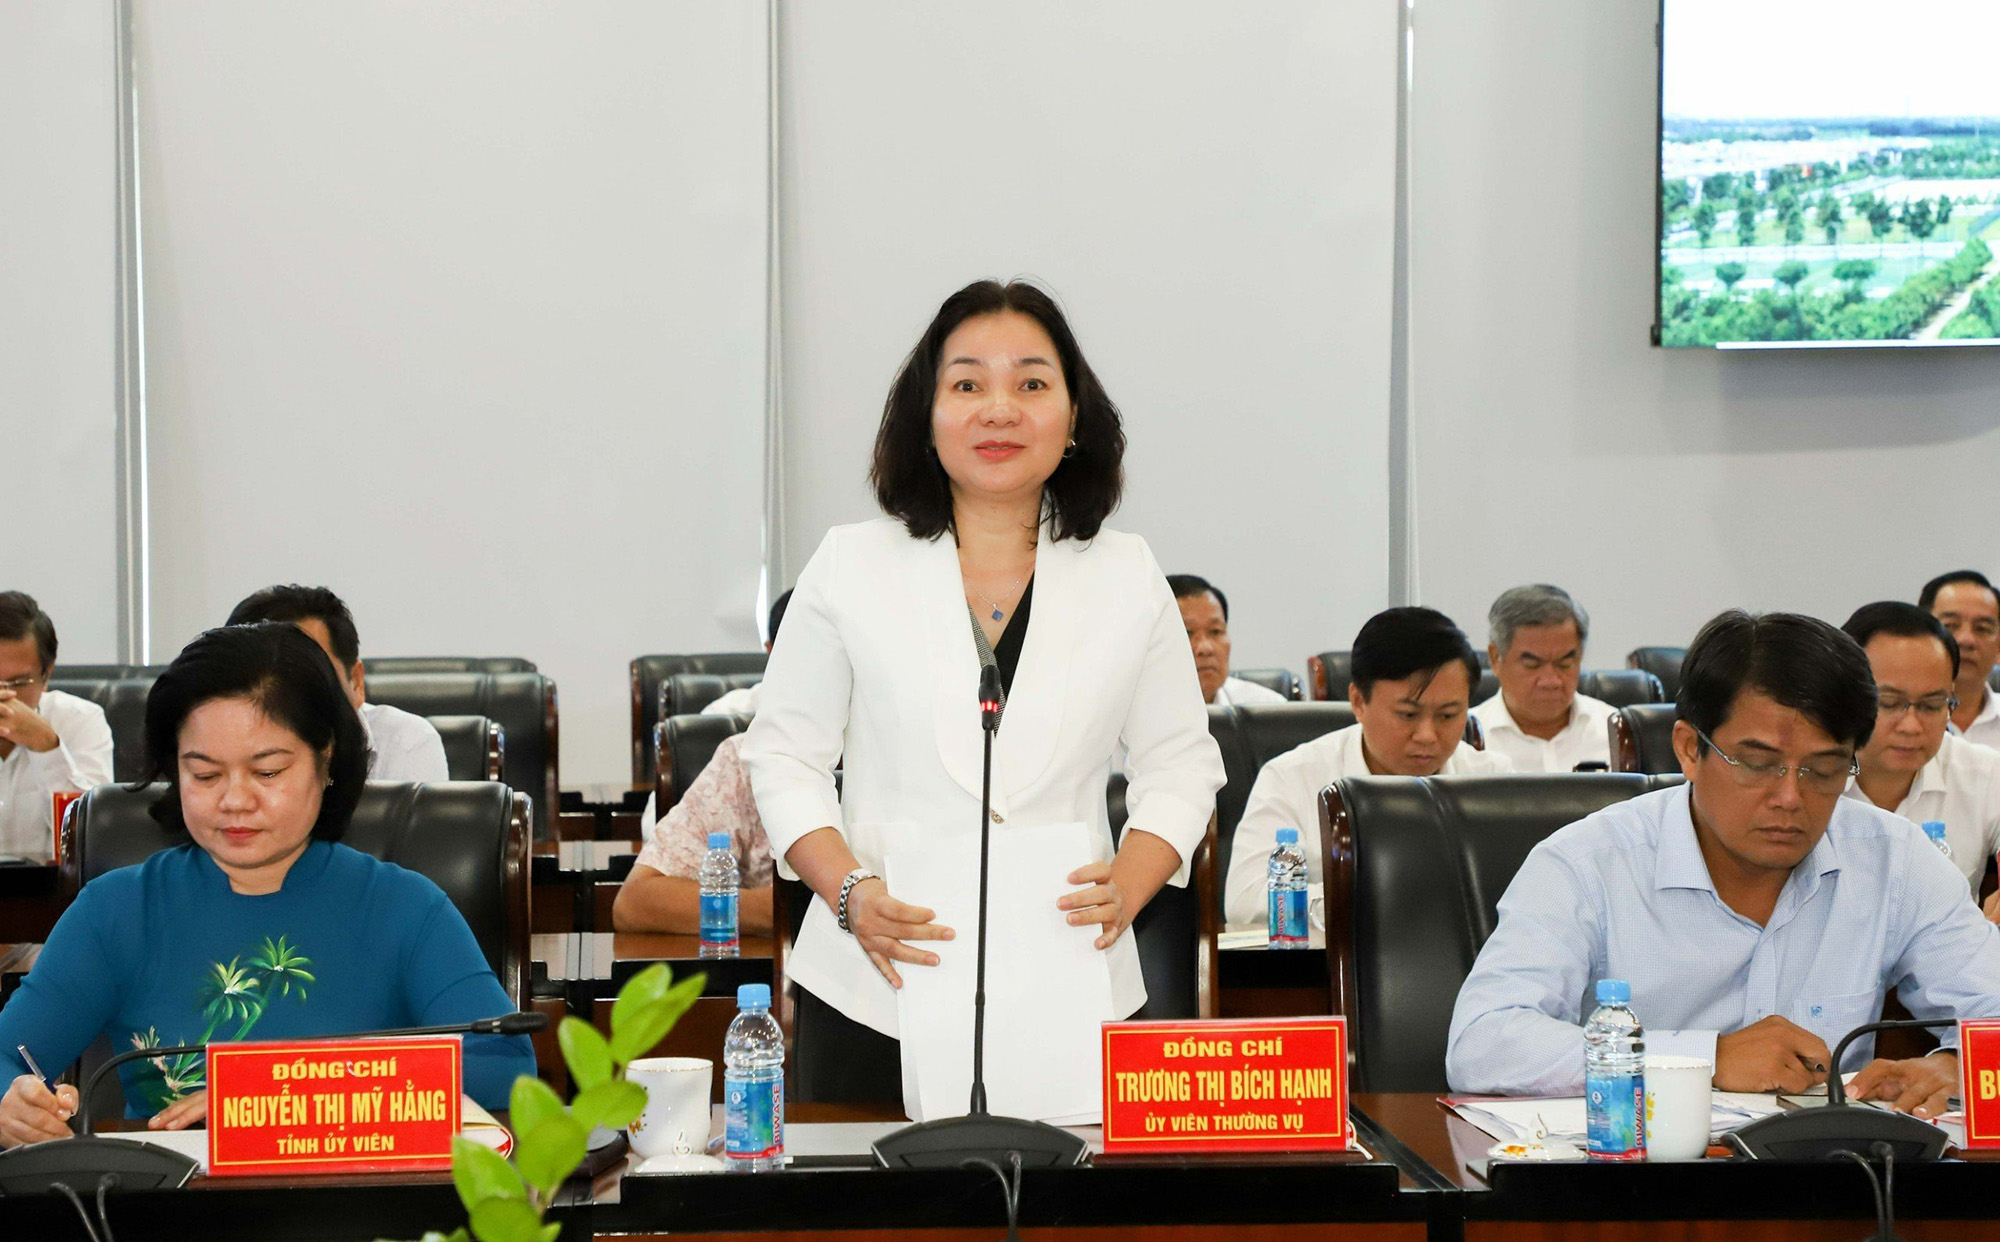 Đồng chí Trương Thị Bích Hạnh - Trưởng Ban Tuyên giáo Tỉnh ủy Bình Dương tại Hội nghị.